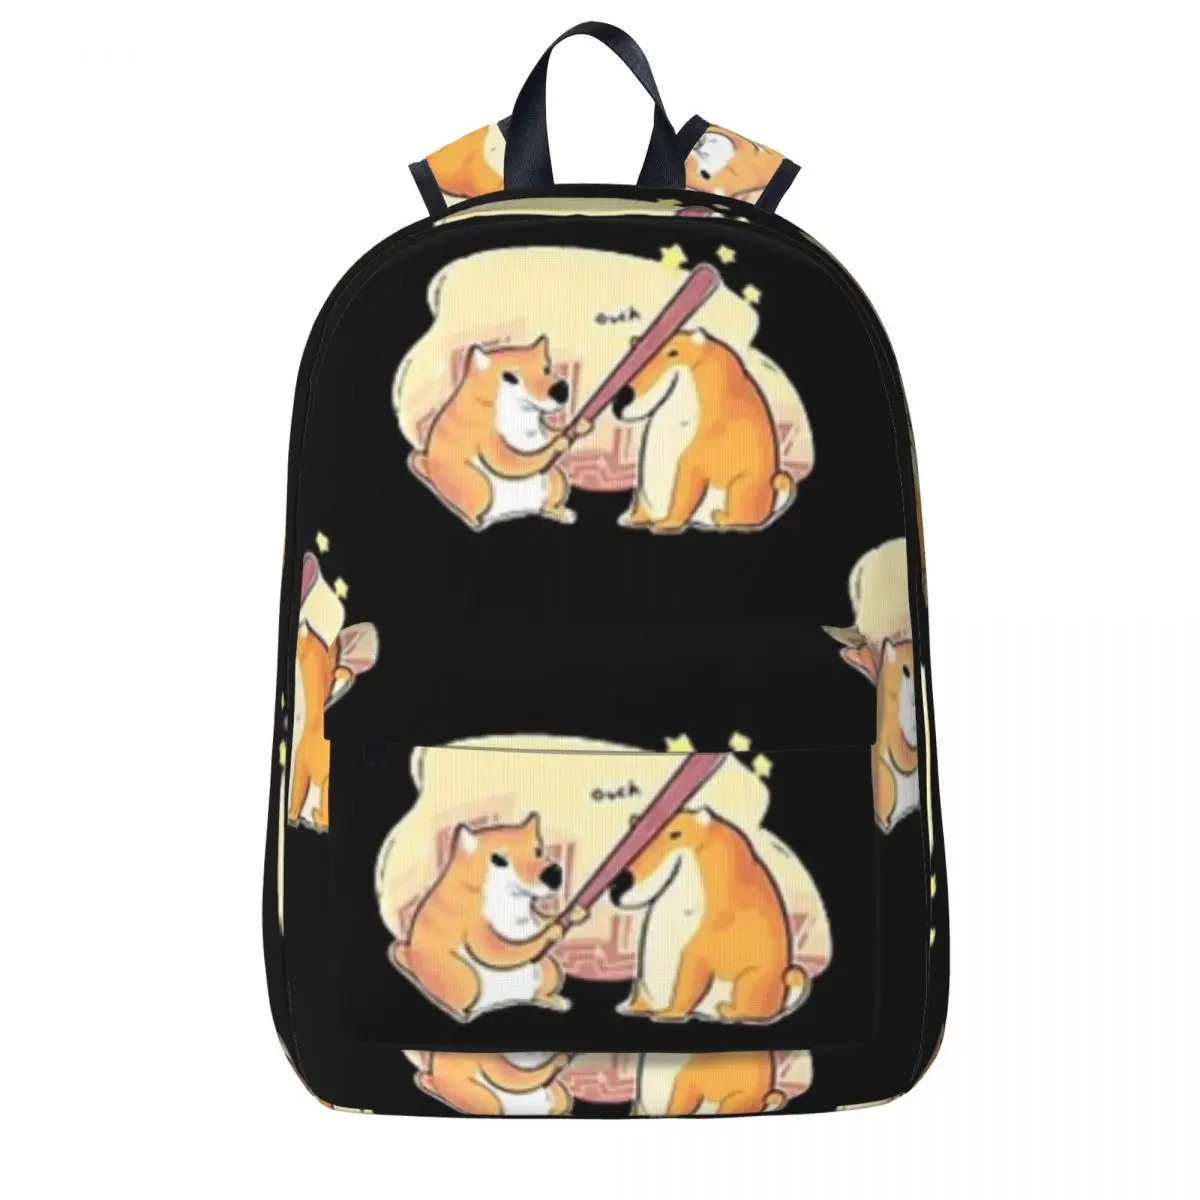 

Dog - Ouch Backpacks Large Capacity Children School Bag Shoulder Bag Laptop Rucksack Fashion Travel Rucksack